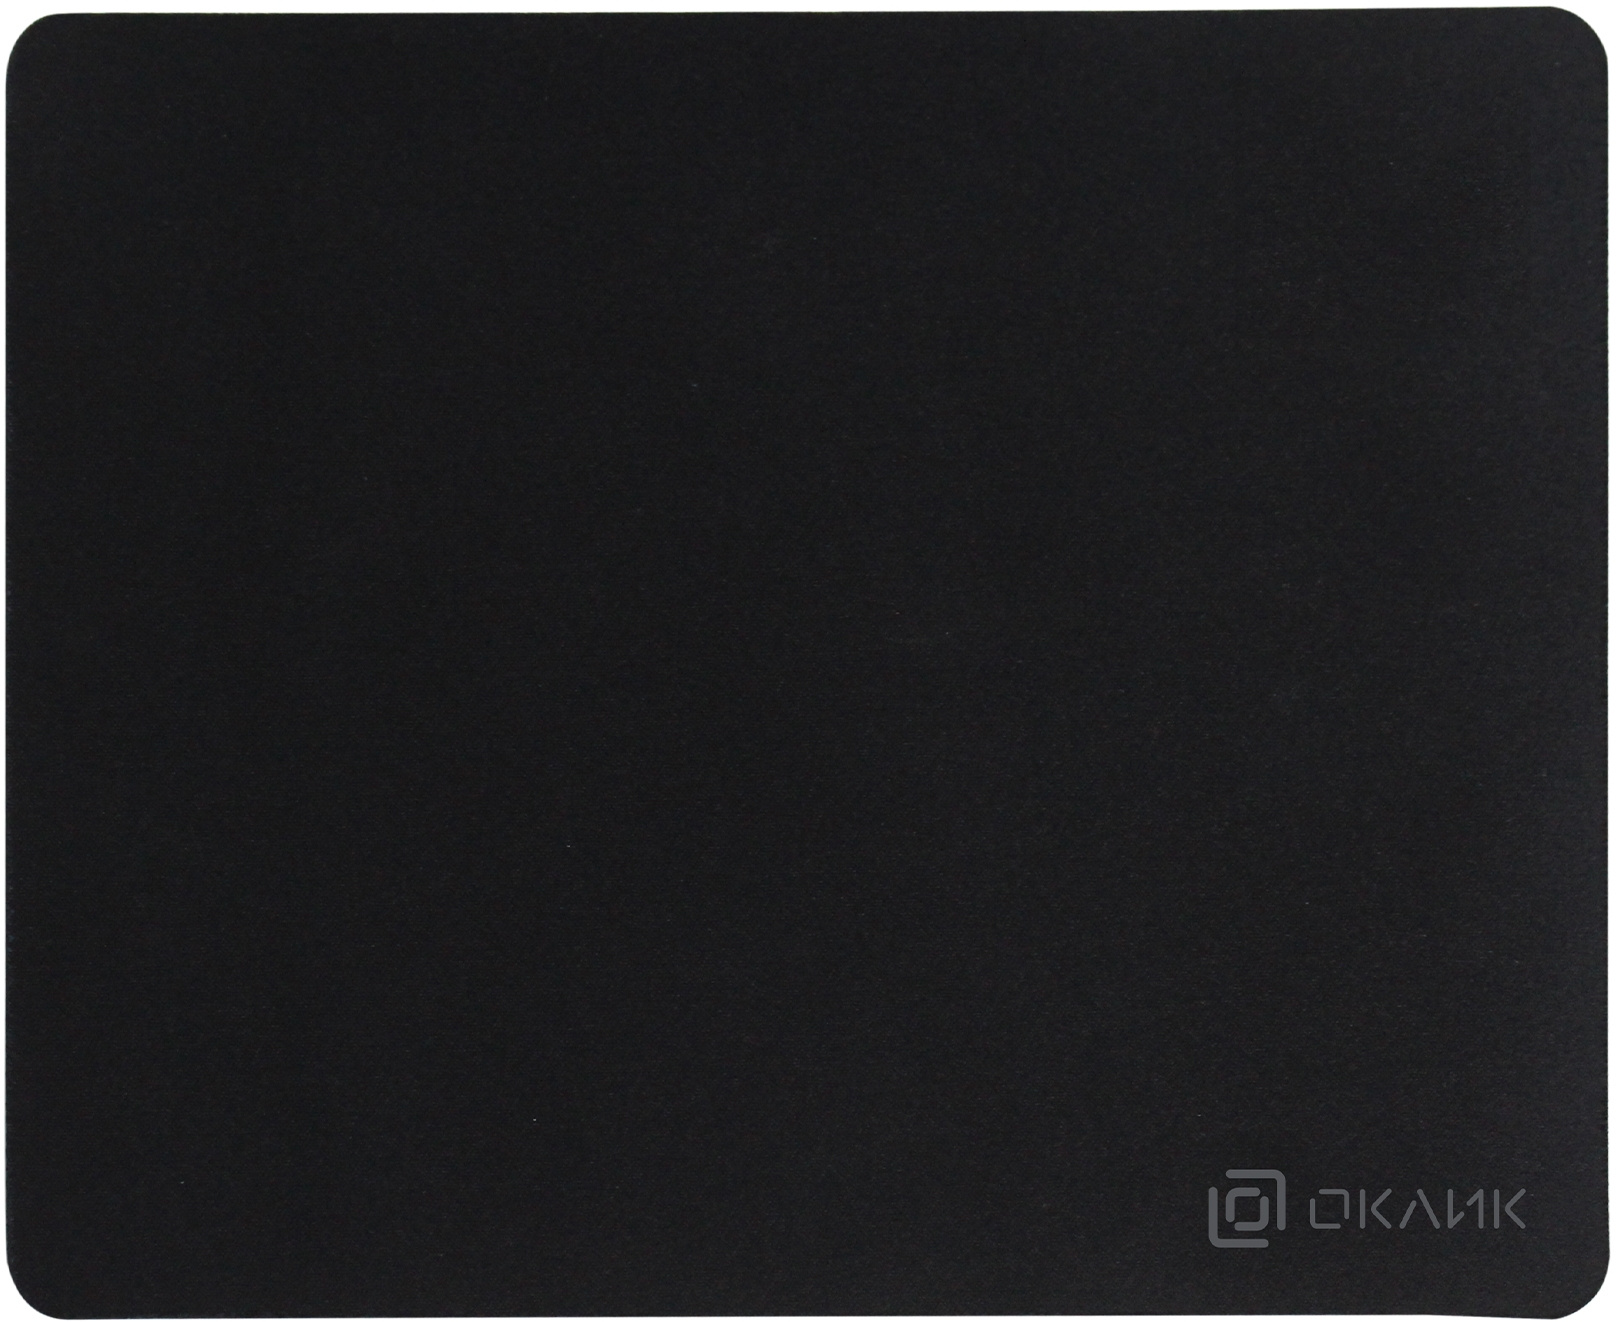 Коврик для мыши Oklick OK-T250, 250x200x2mm, черный (OK-T250)